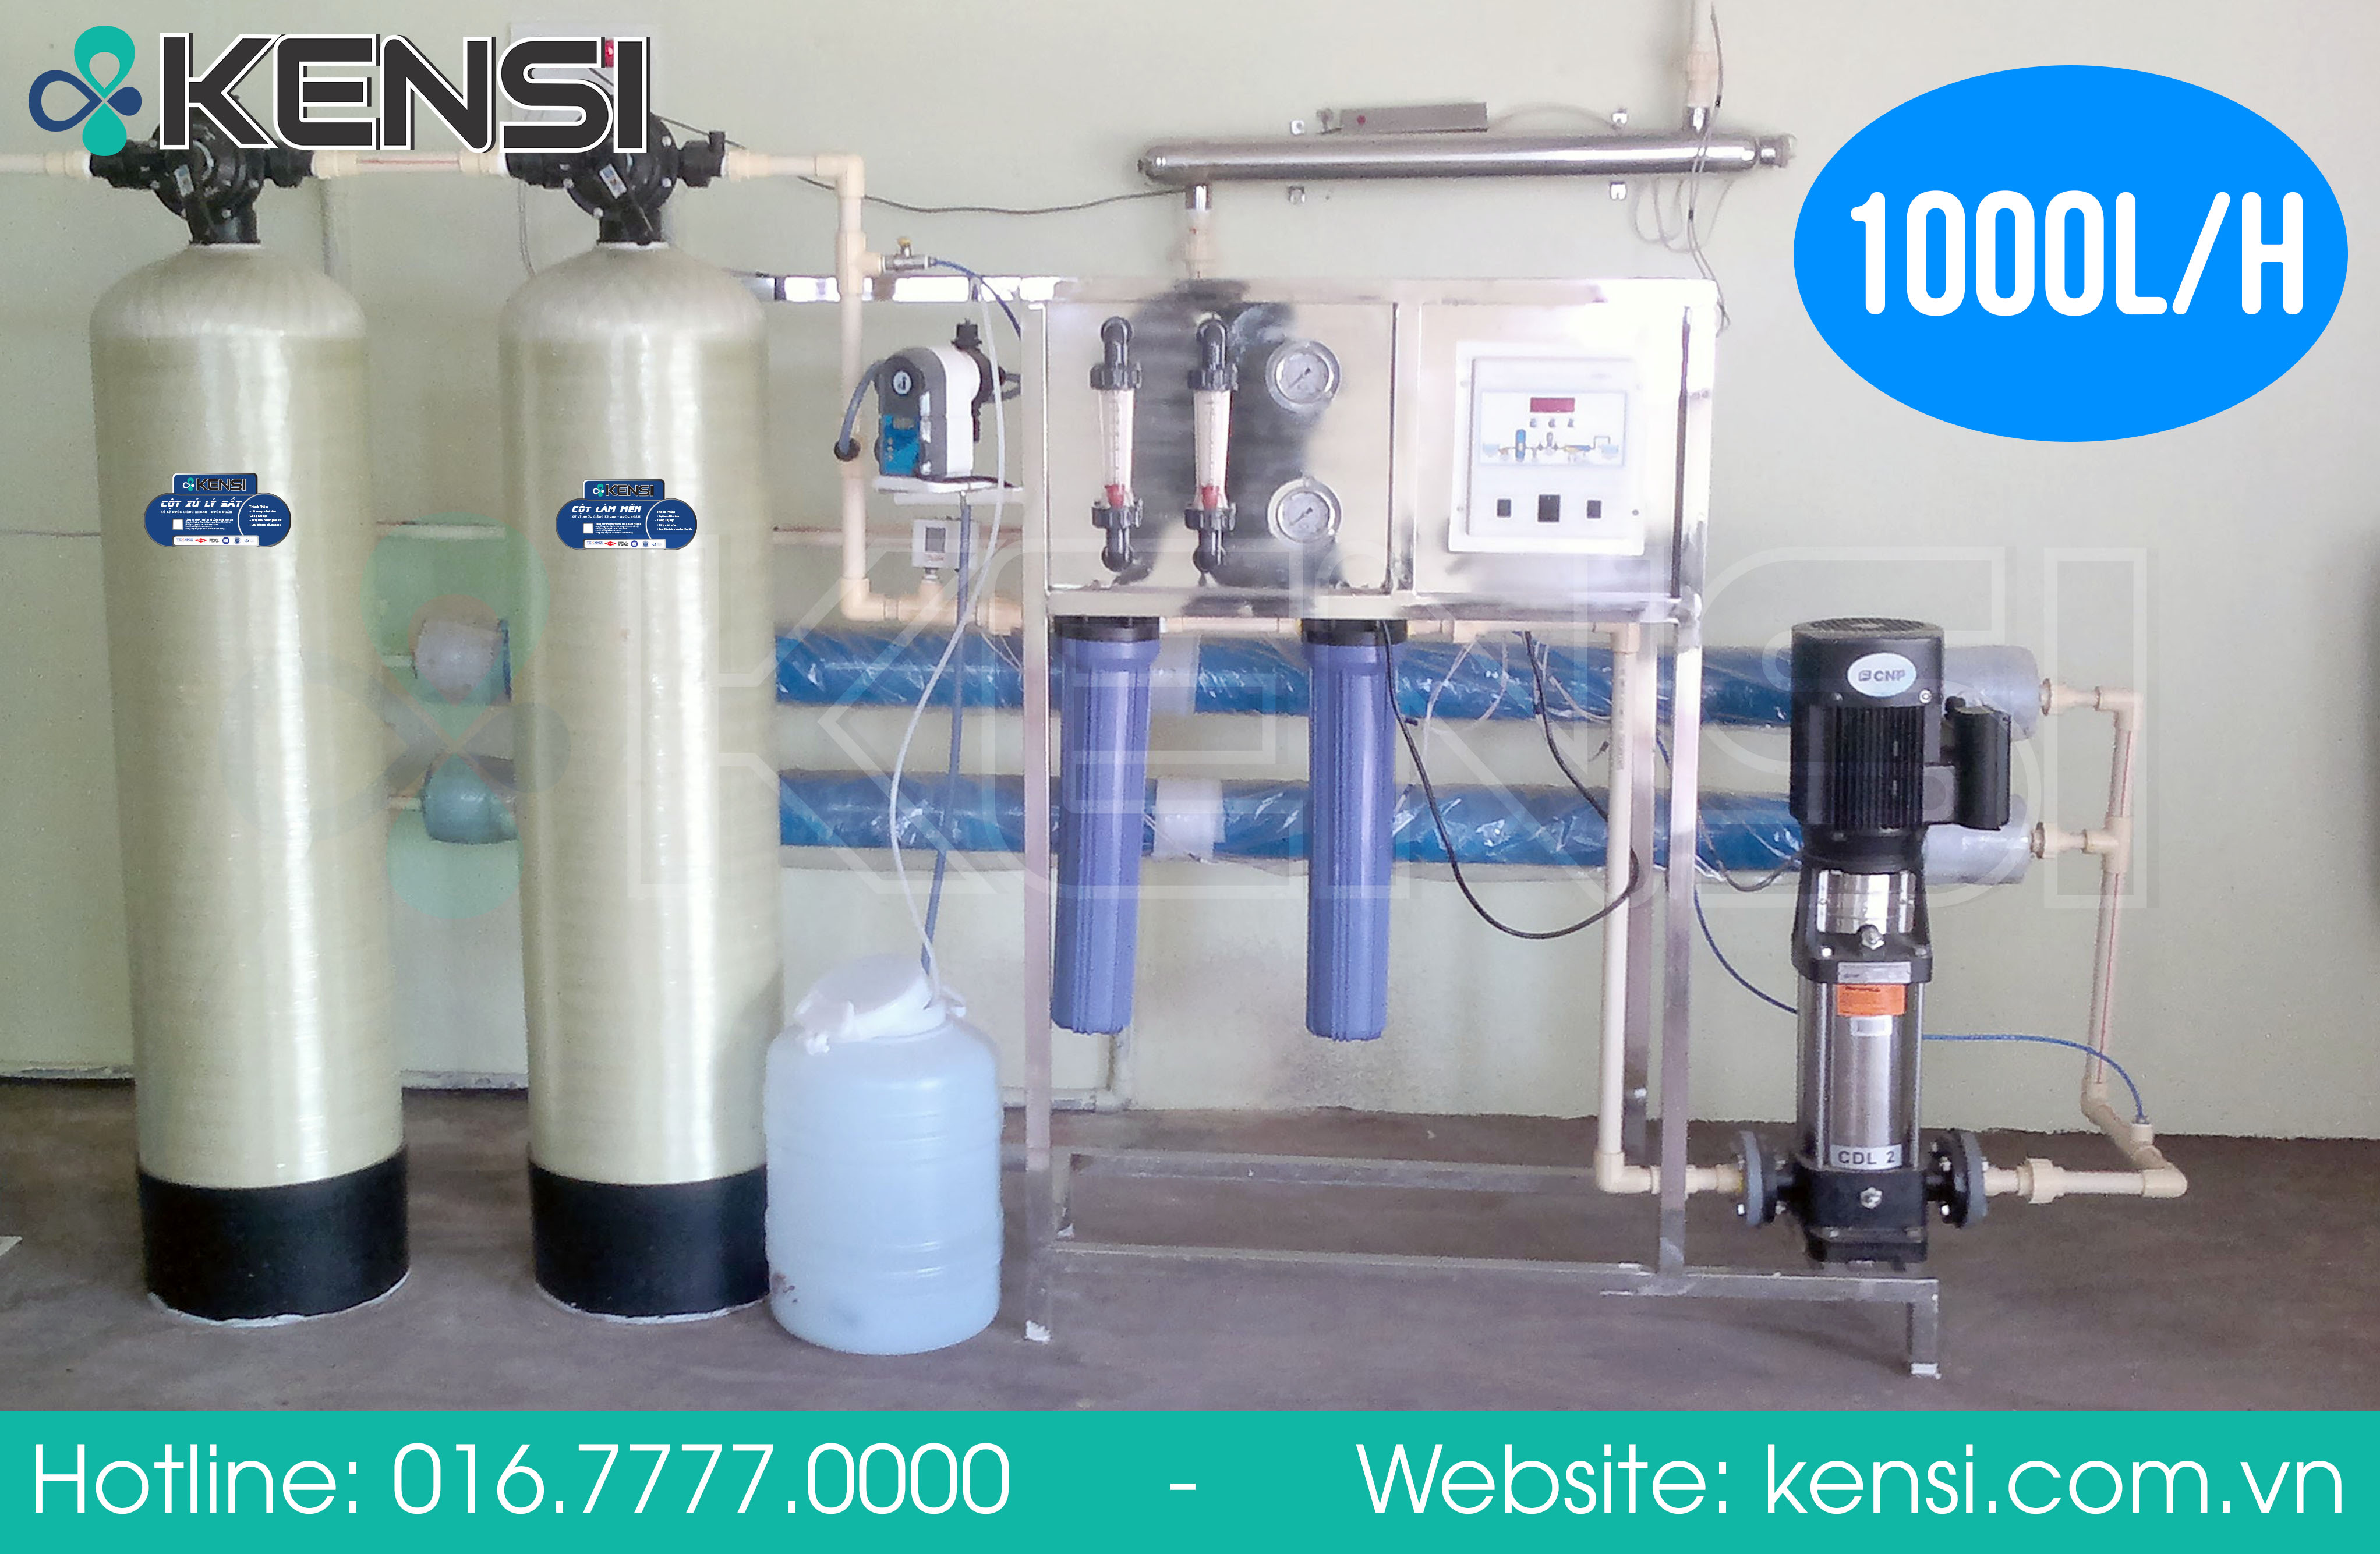 Hệ thống máy lọc nước công nghiệp công suất 1000 l/h